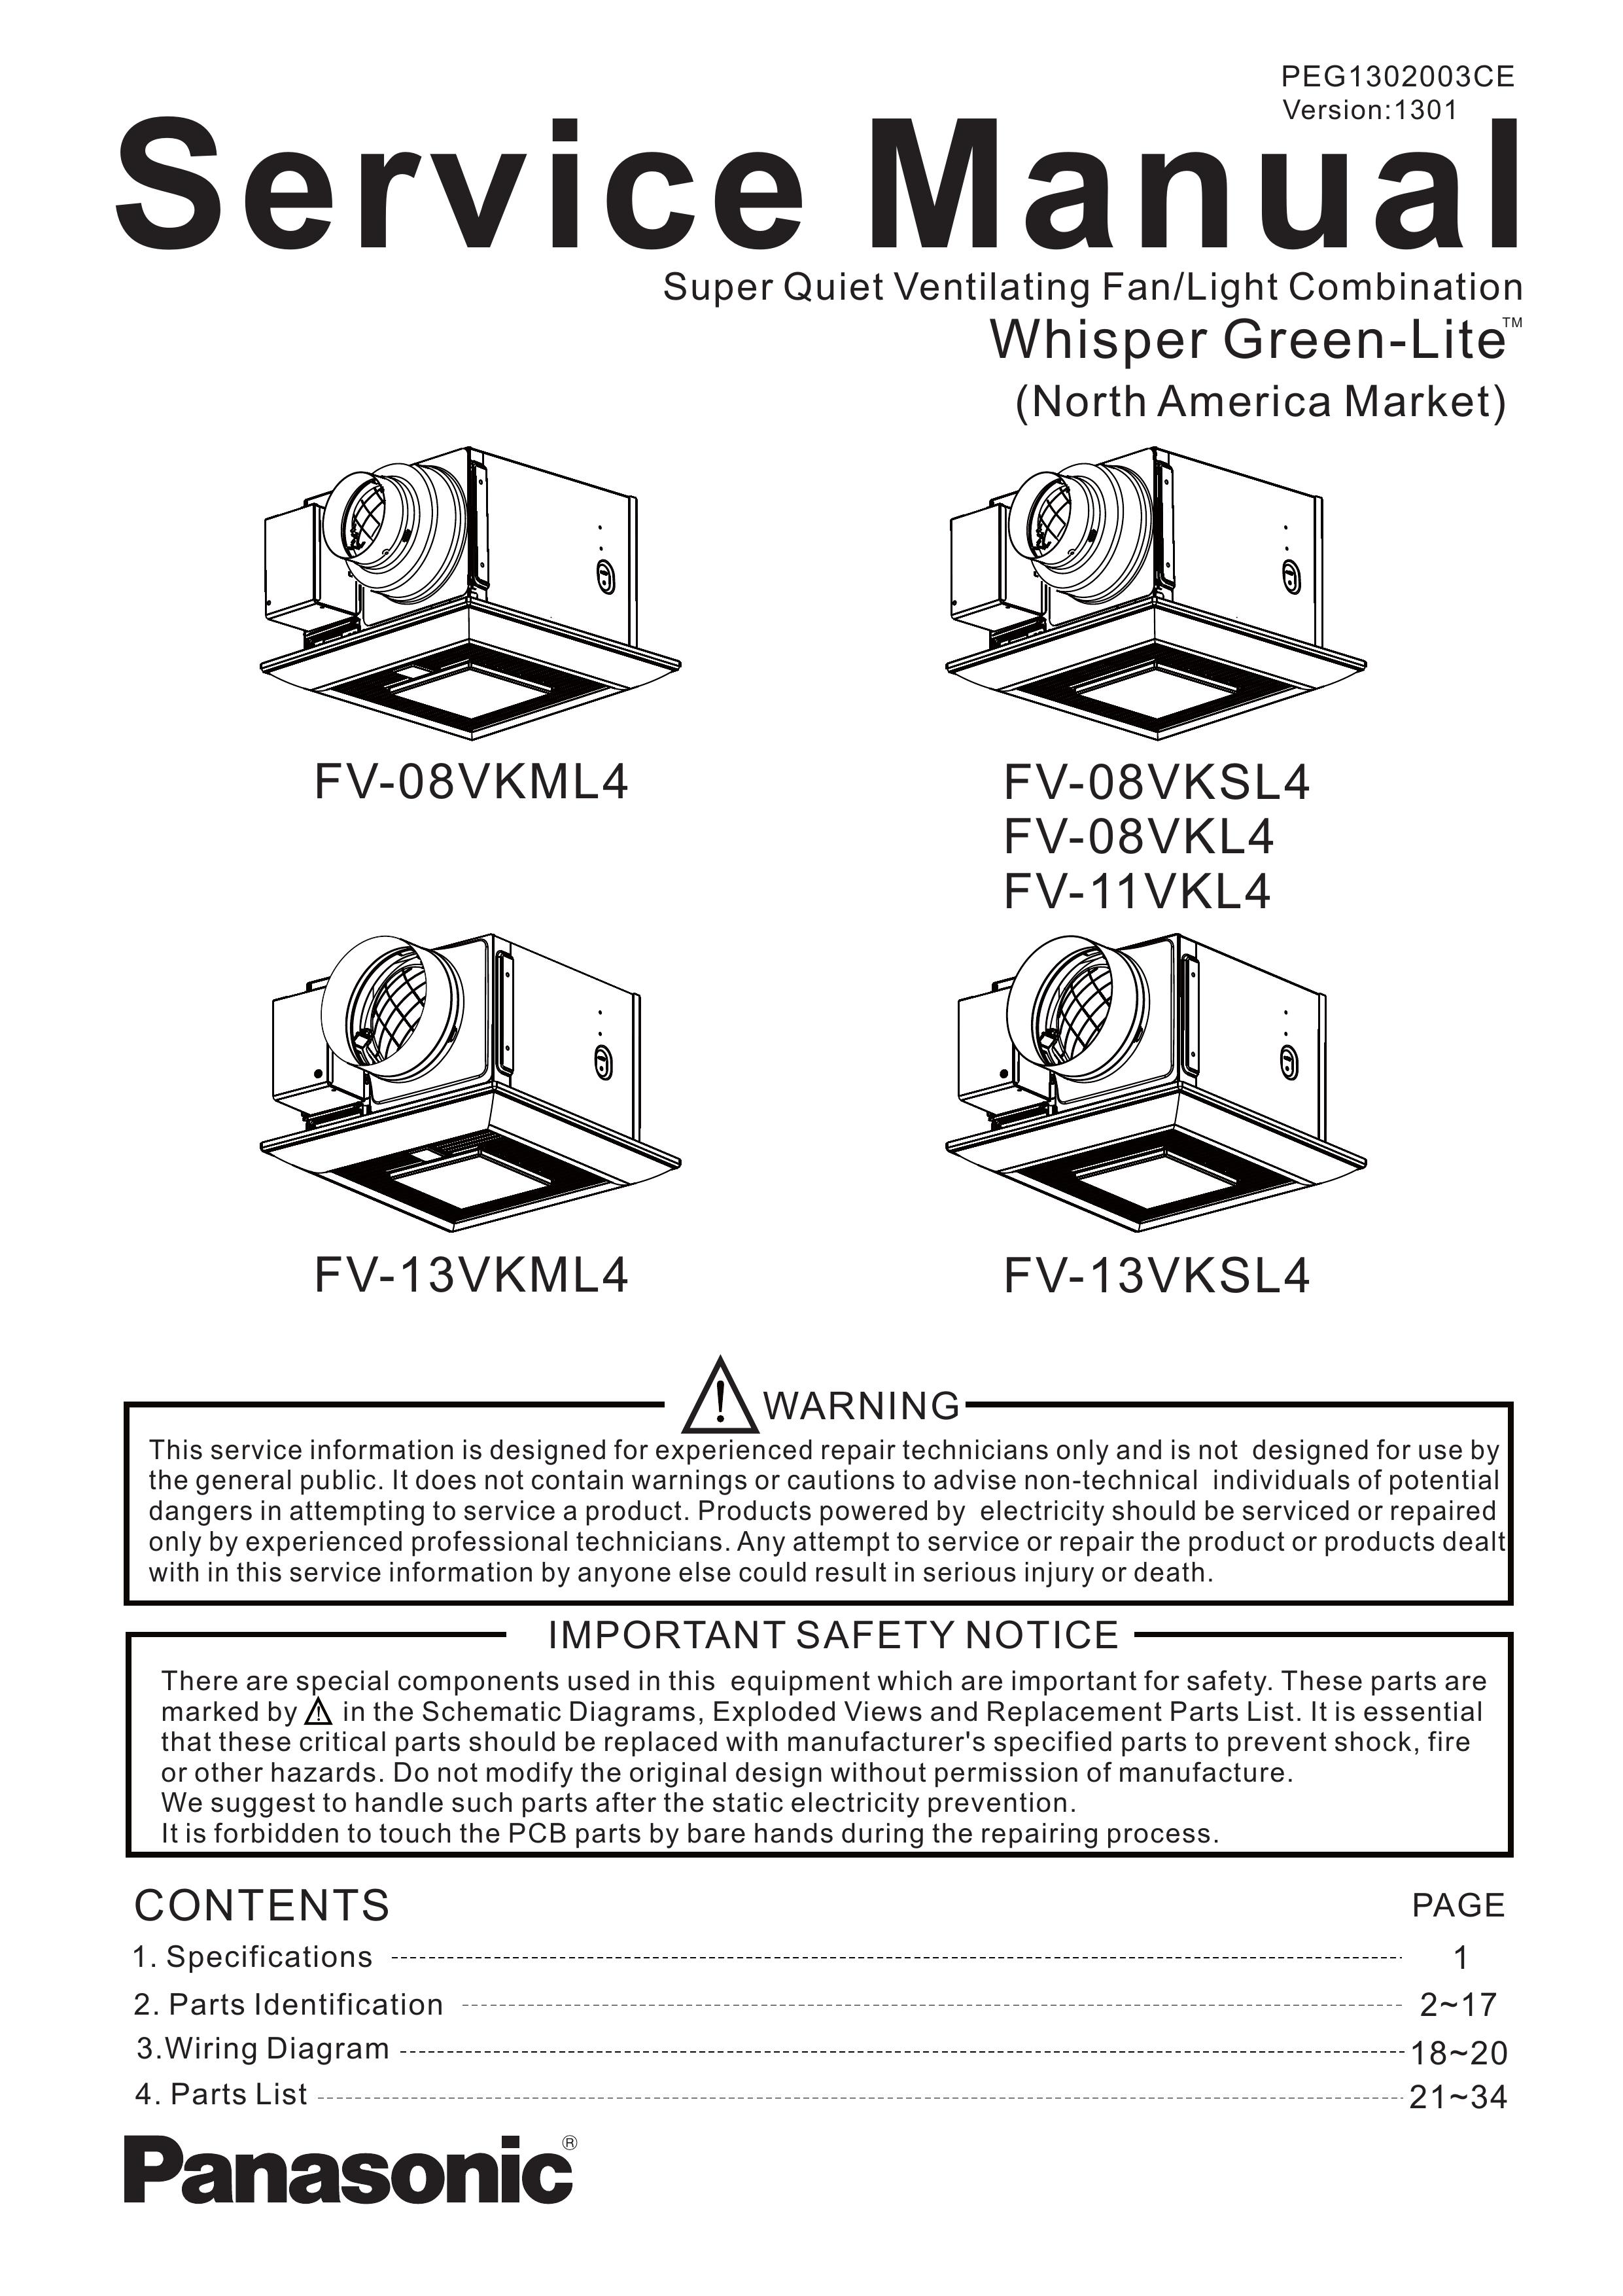 Panasonic FV-08VKL4 Ventilation Hood User Manual